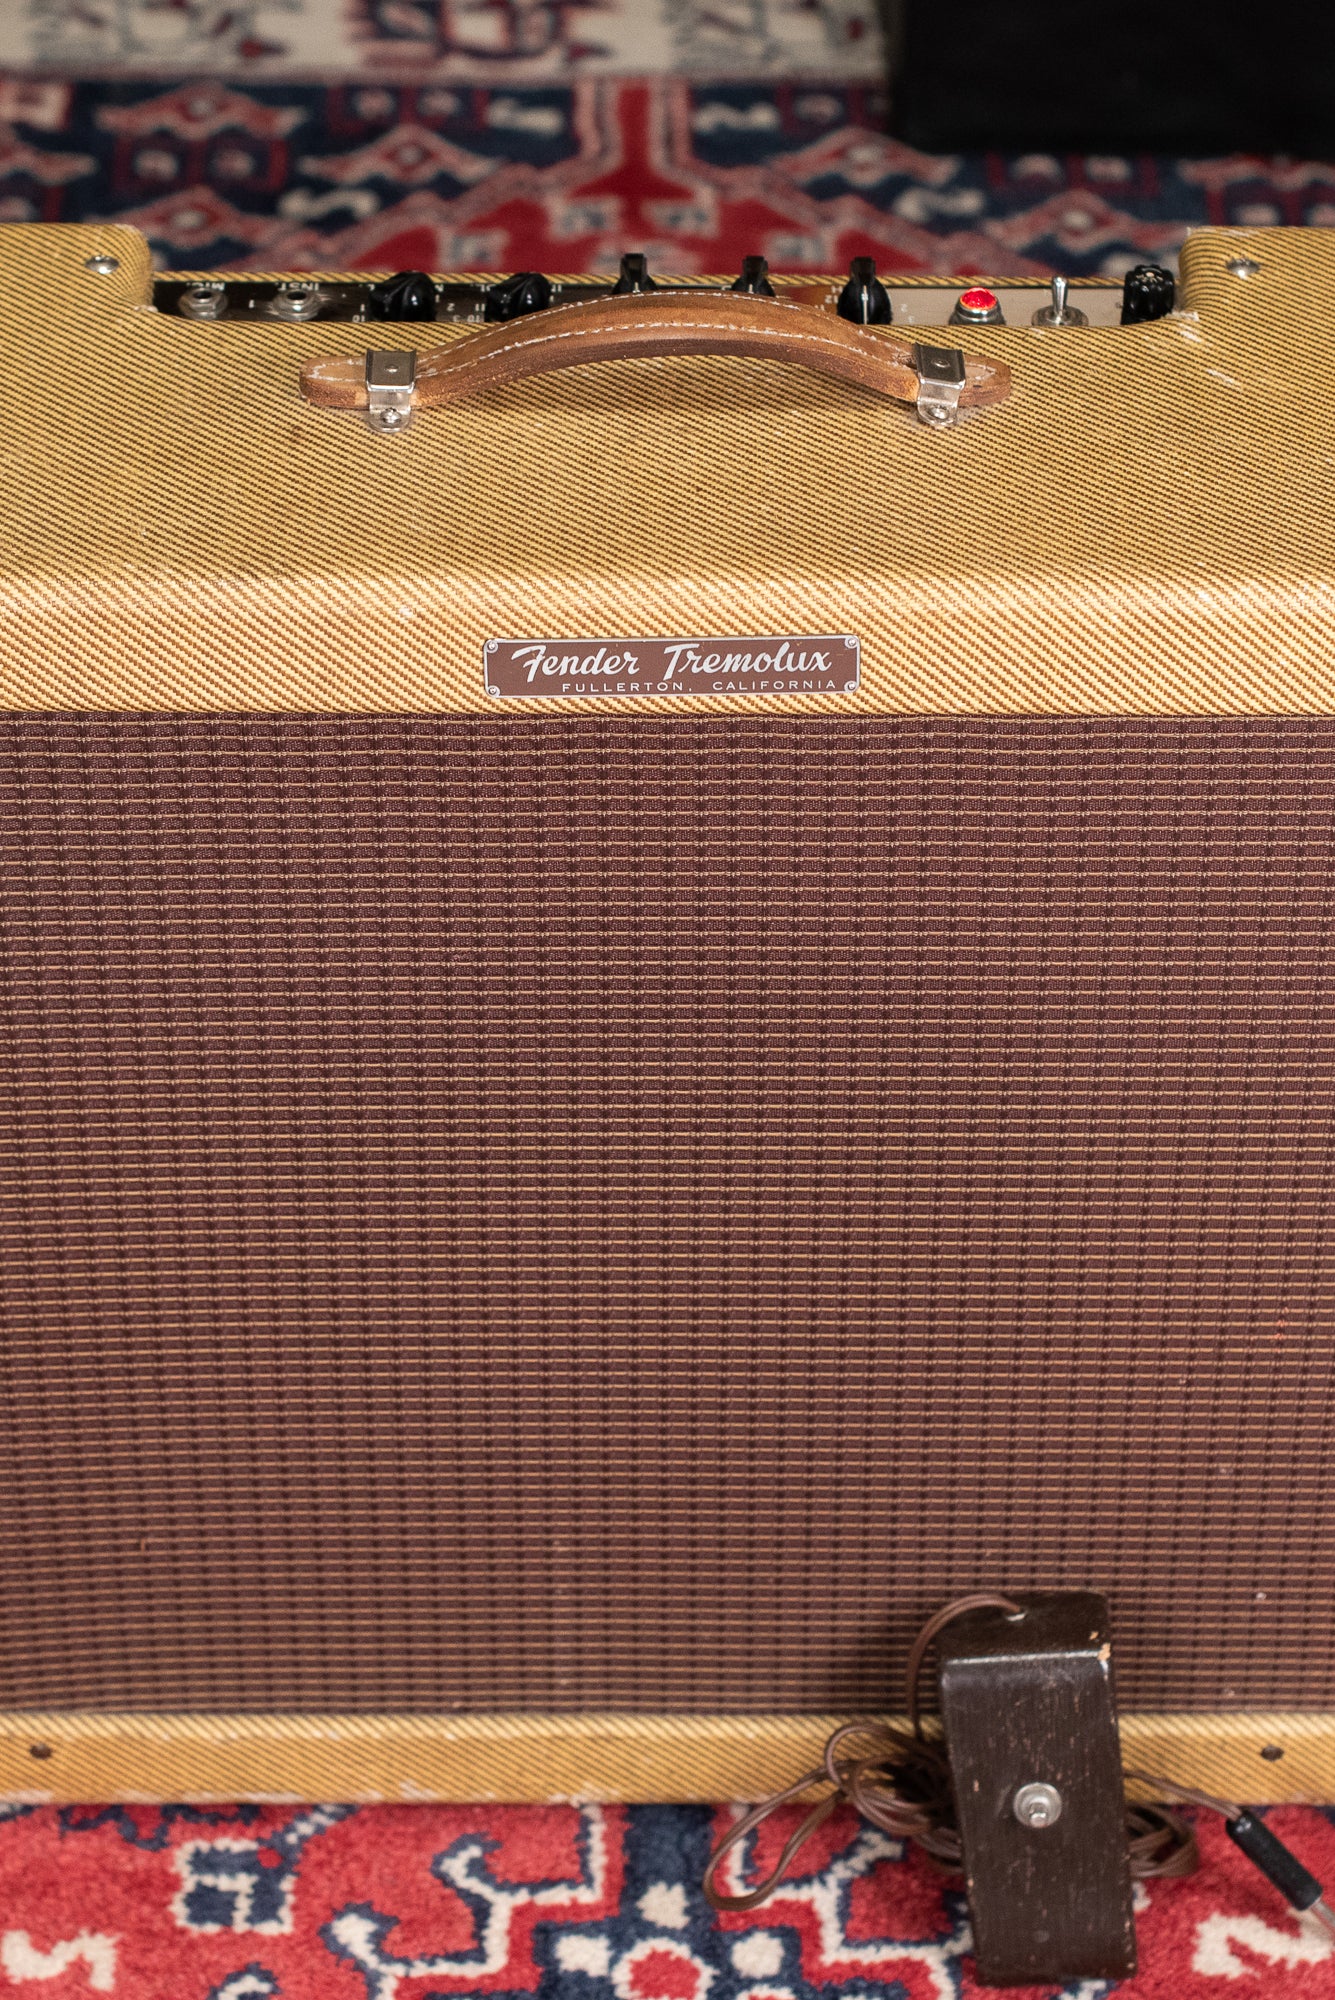 Vintage Fender Tweed Amp